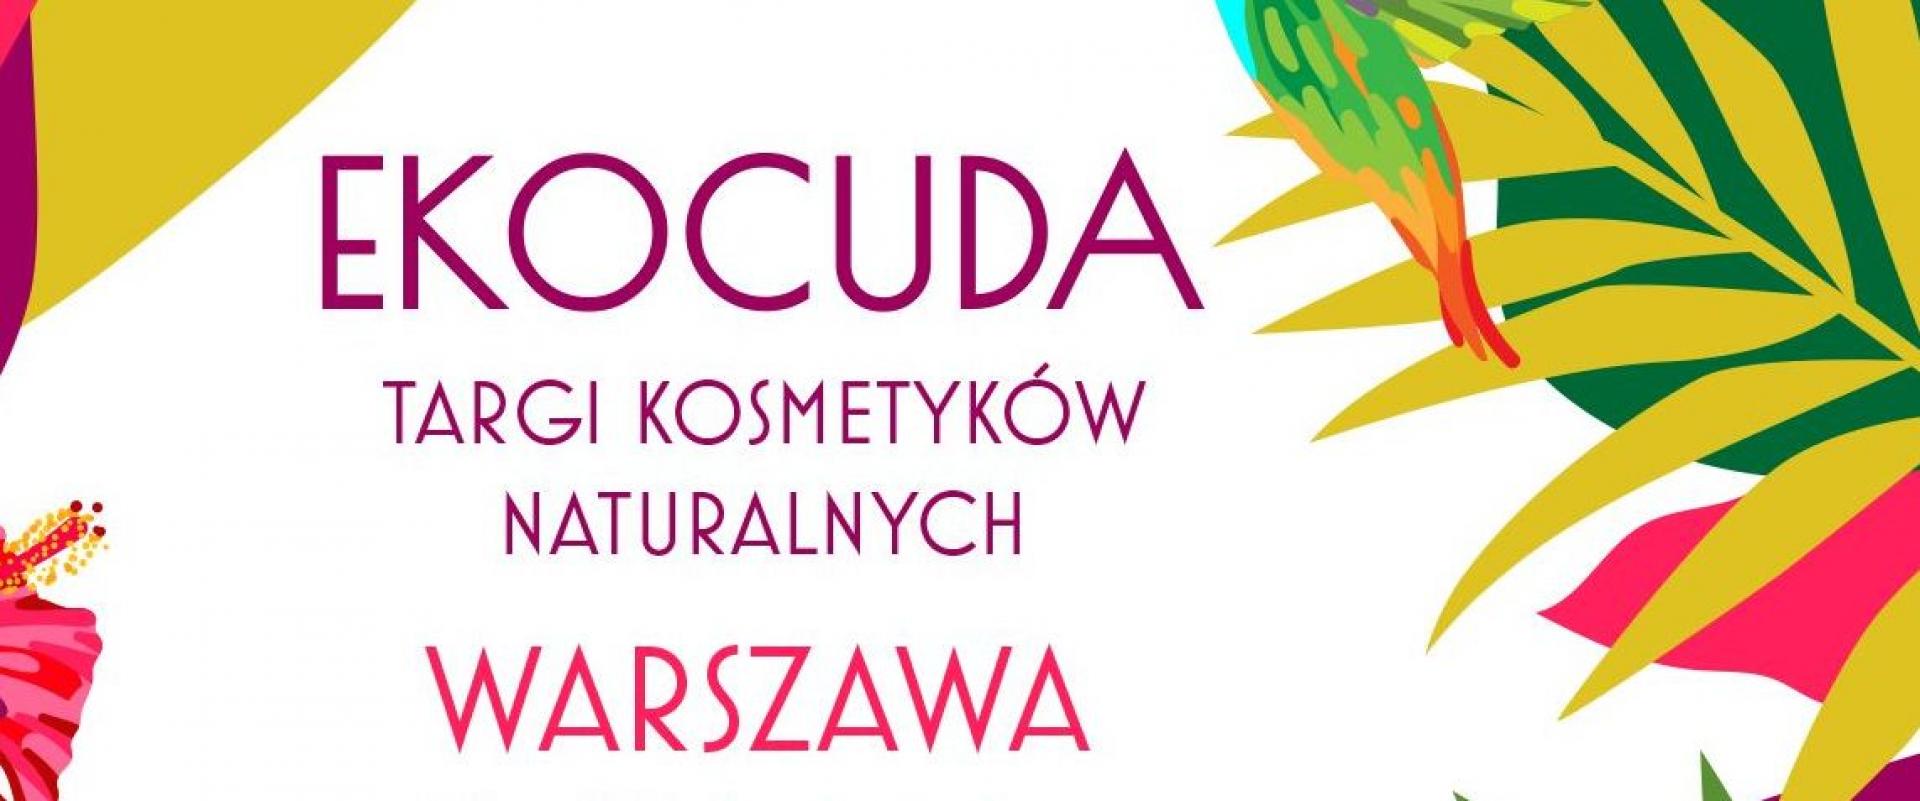 Ekocuda we Wrocławiu i w Warszawie - są jeszcze wolne powierzchnie pod wynajem